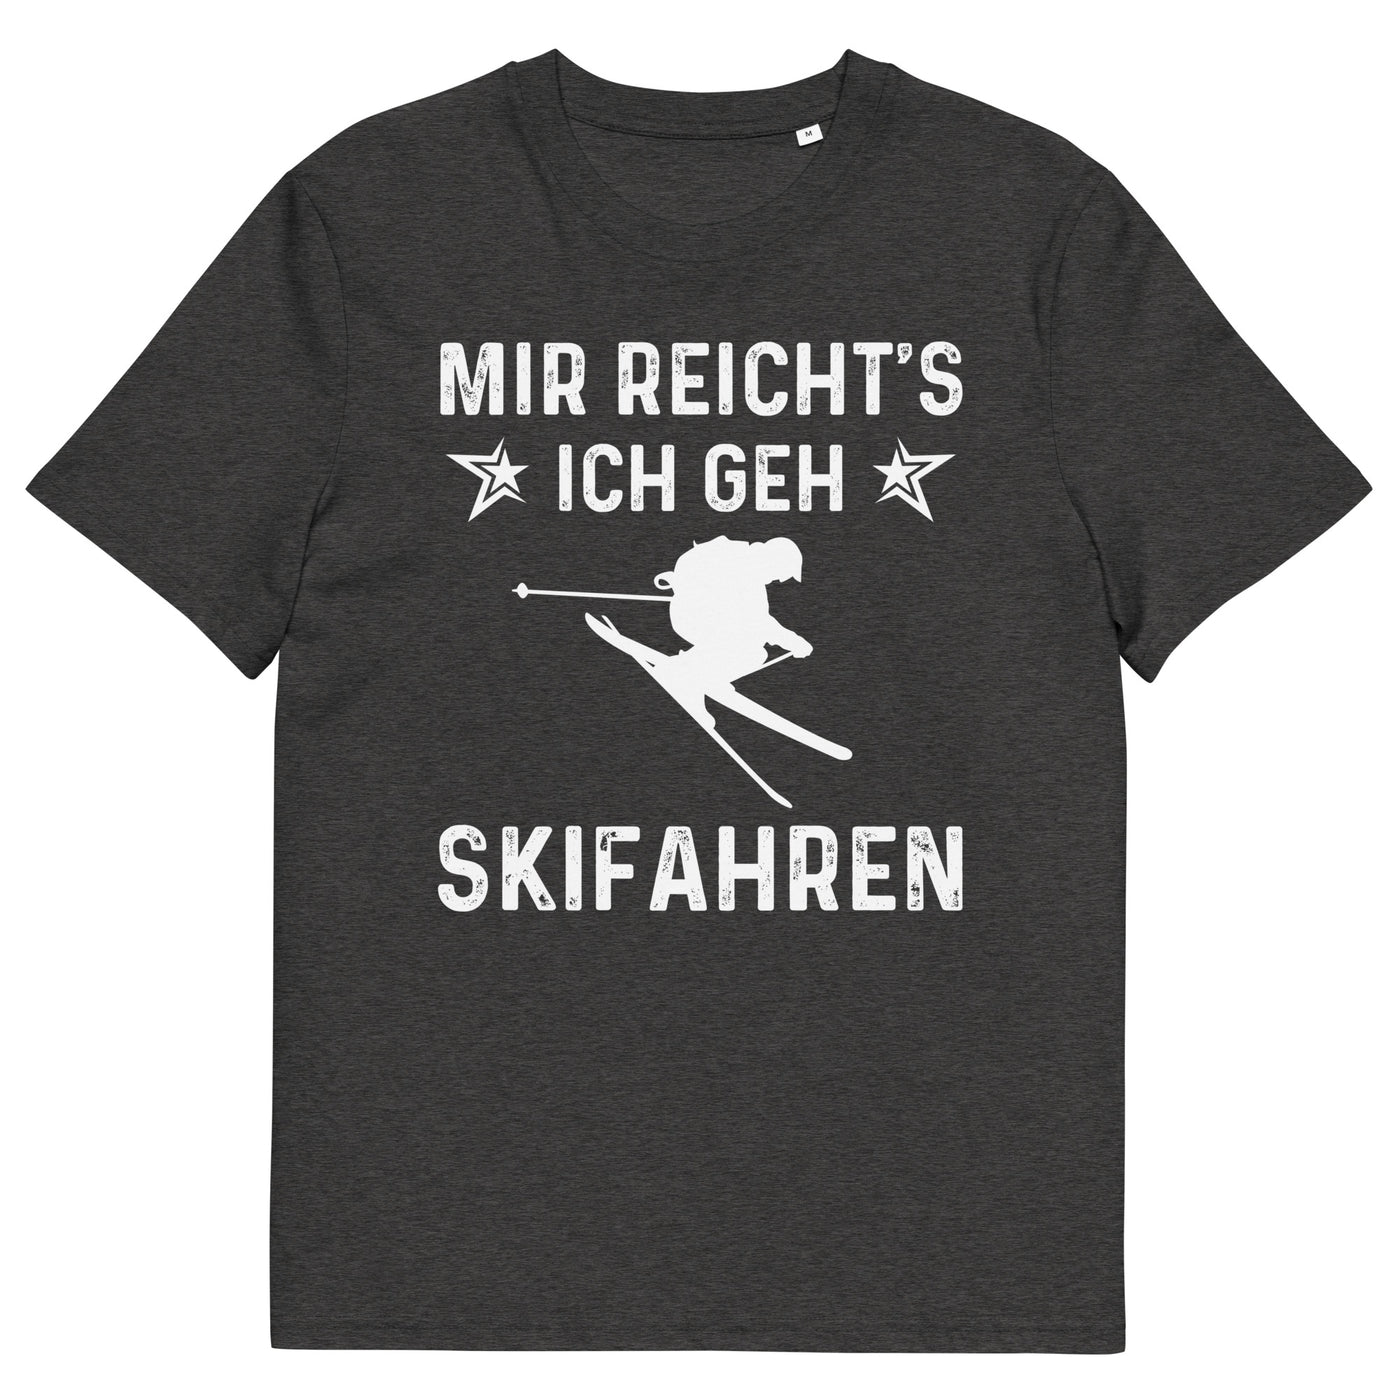 Mir Reicht's Ich Gen Skifahren - Herren Premium Organic T-Shirt klettern ski xxx yyy zzz Dark Heather Grey